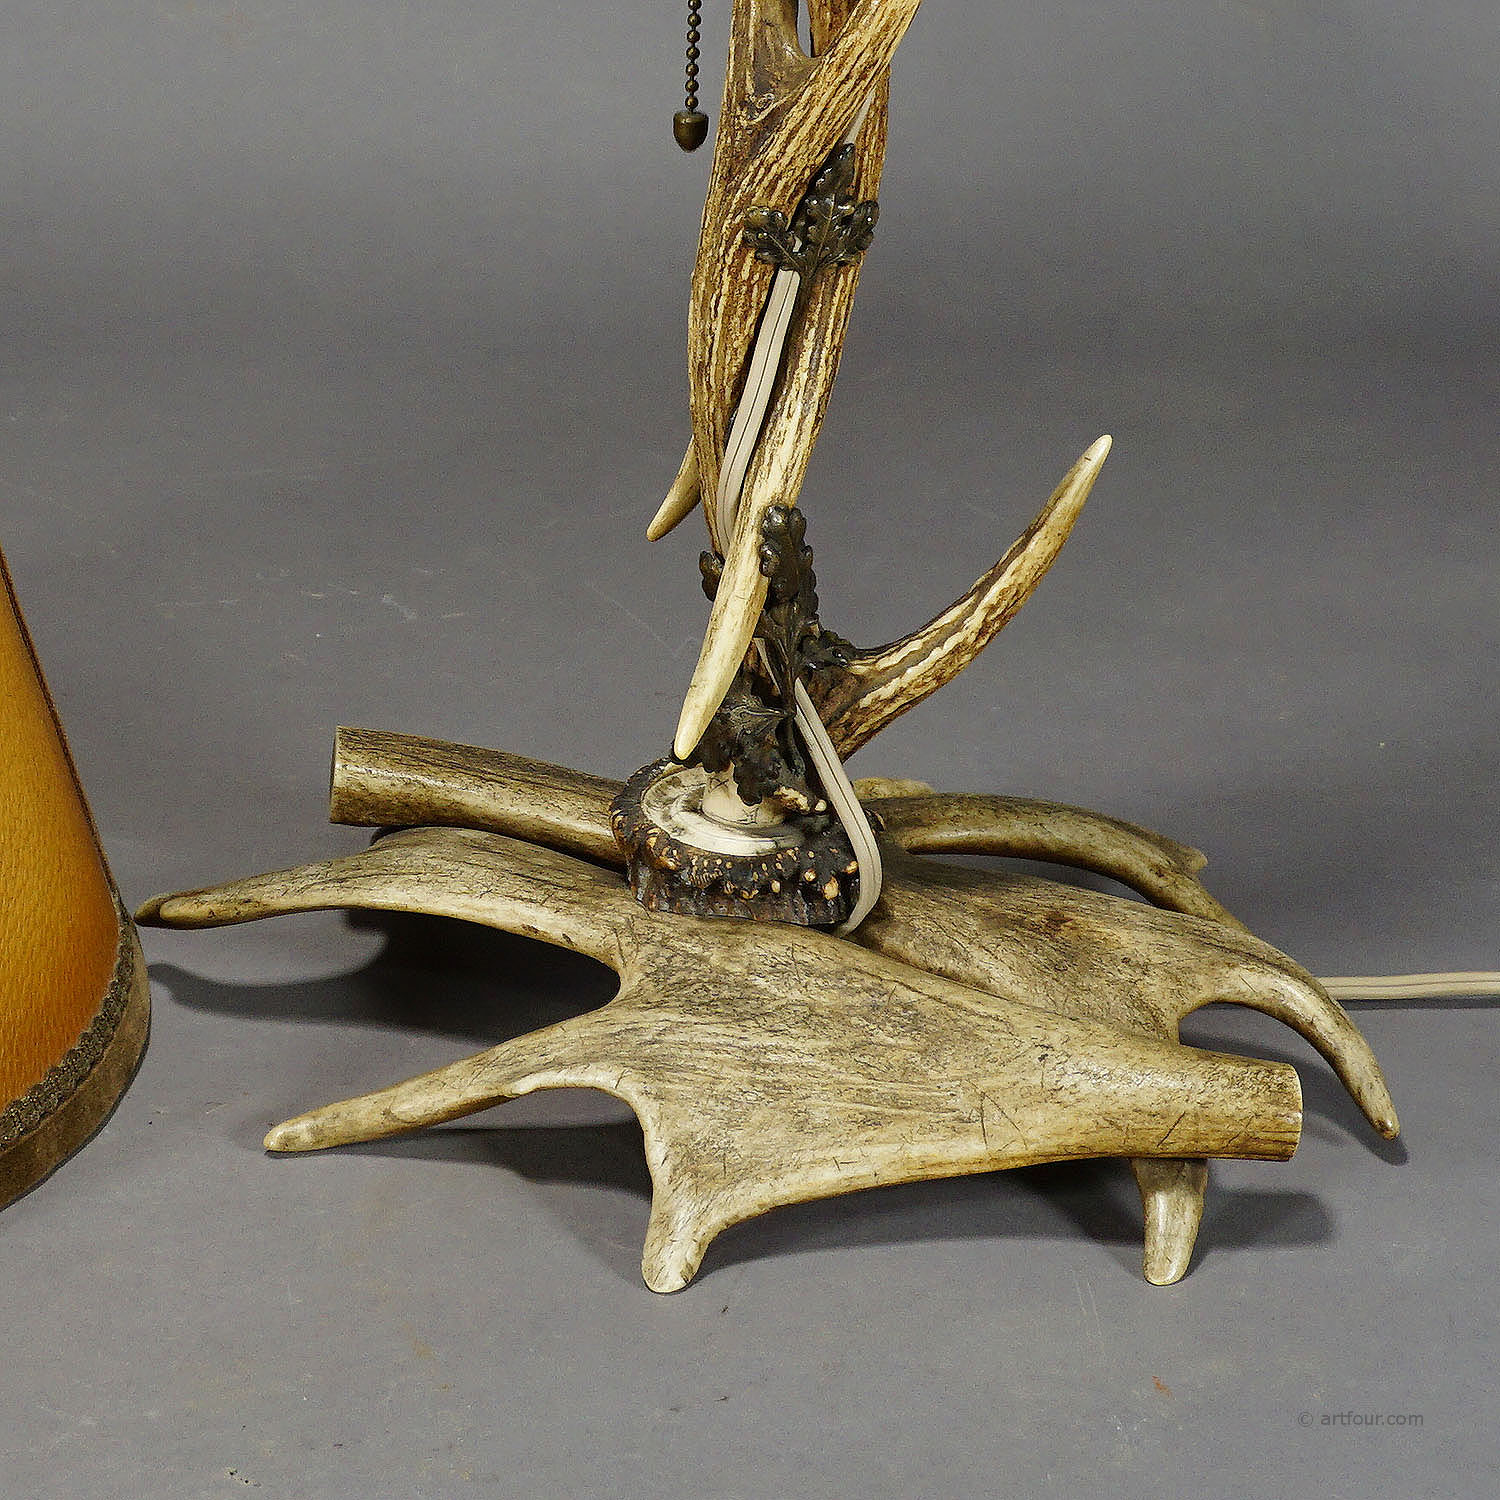 Rustic Antler Desk Lamp with Deer and Virginia Deer Antlers